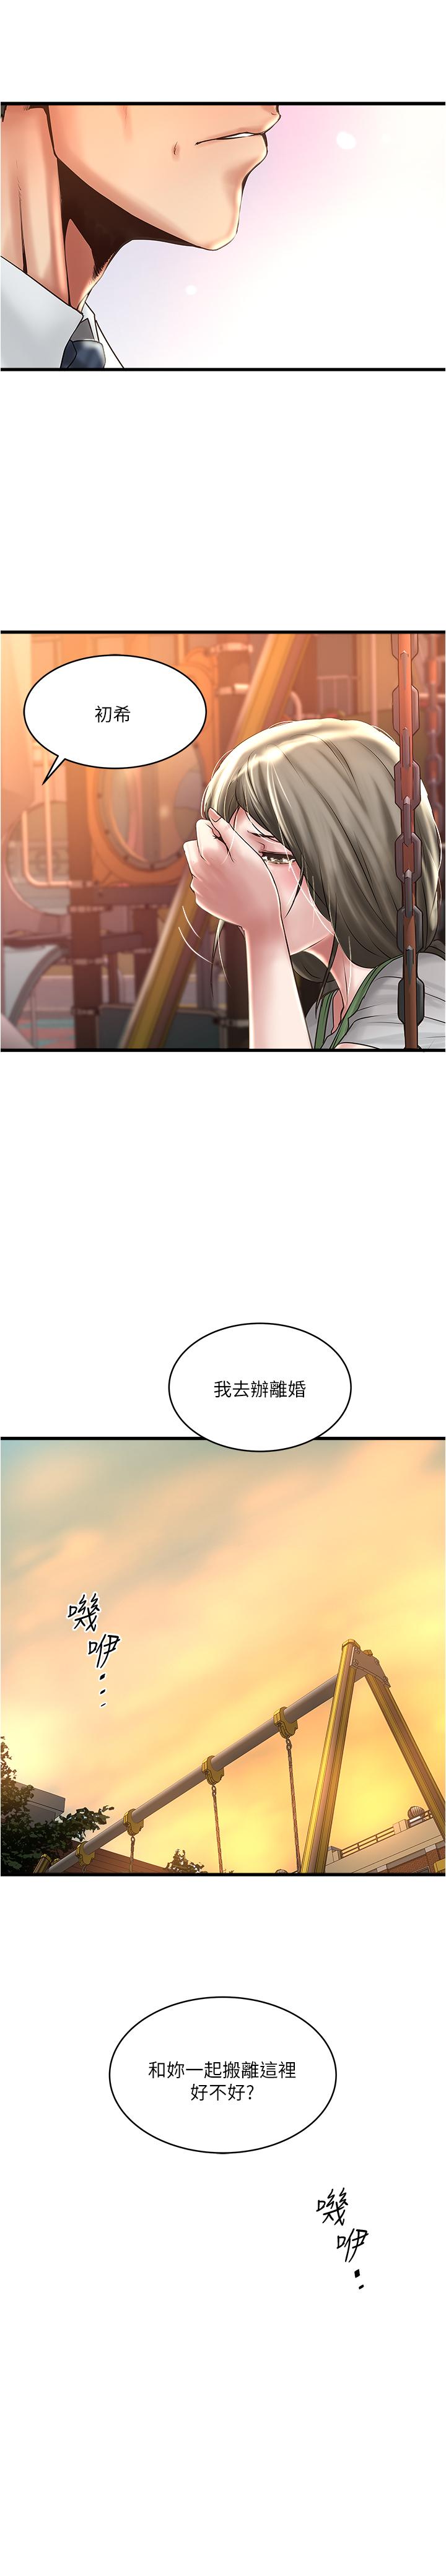 韩国污漫画 下女,初希 第68话-俊皓的决定 30